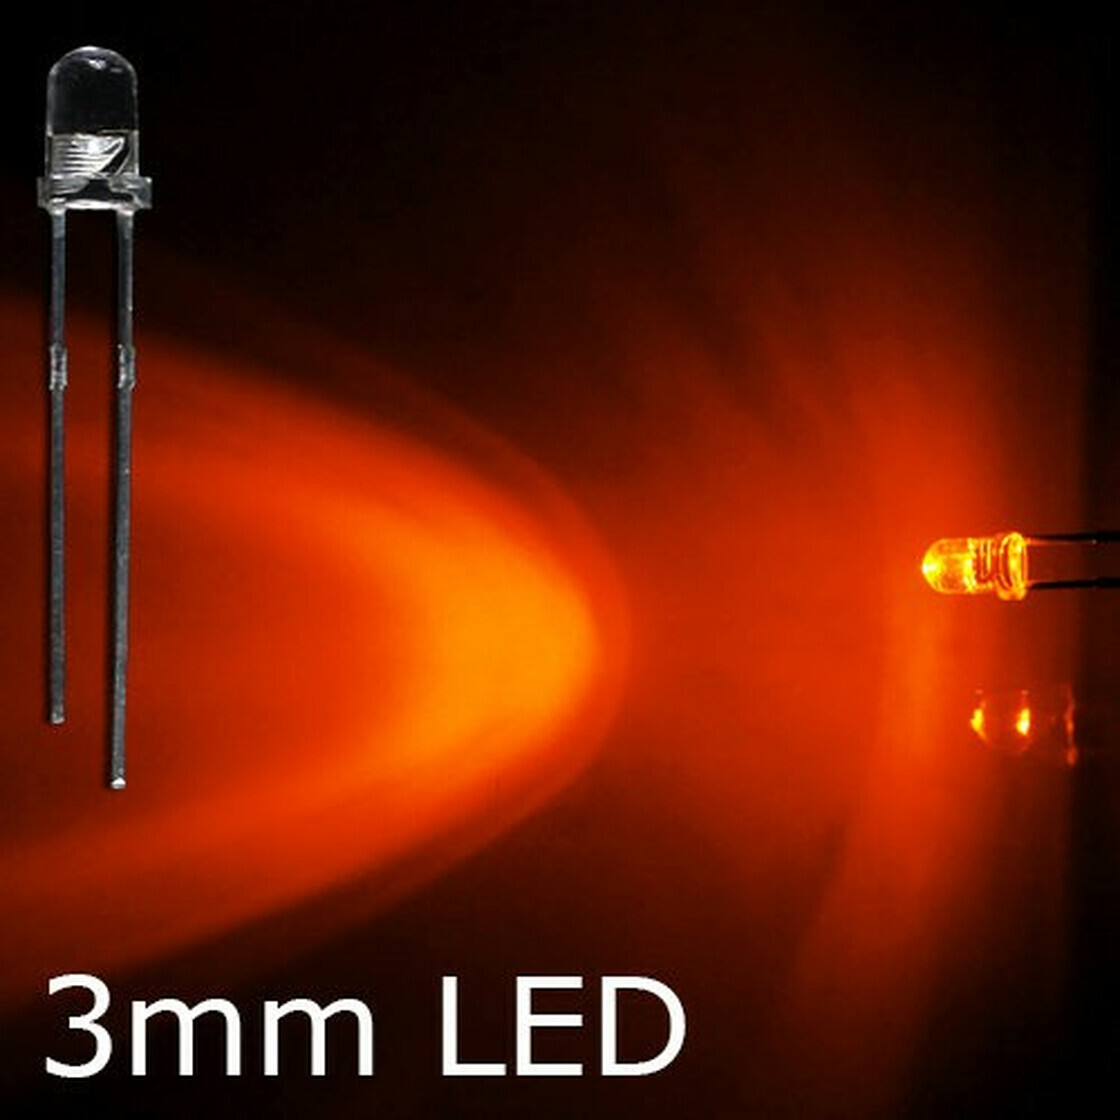 Blink-LED orange 3mm wasserklar inkl. Widerstand hell 20° - 10er-Pack, 2,09  €